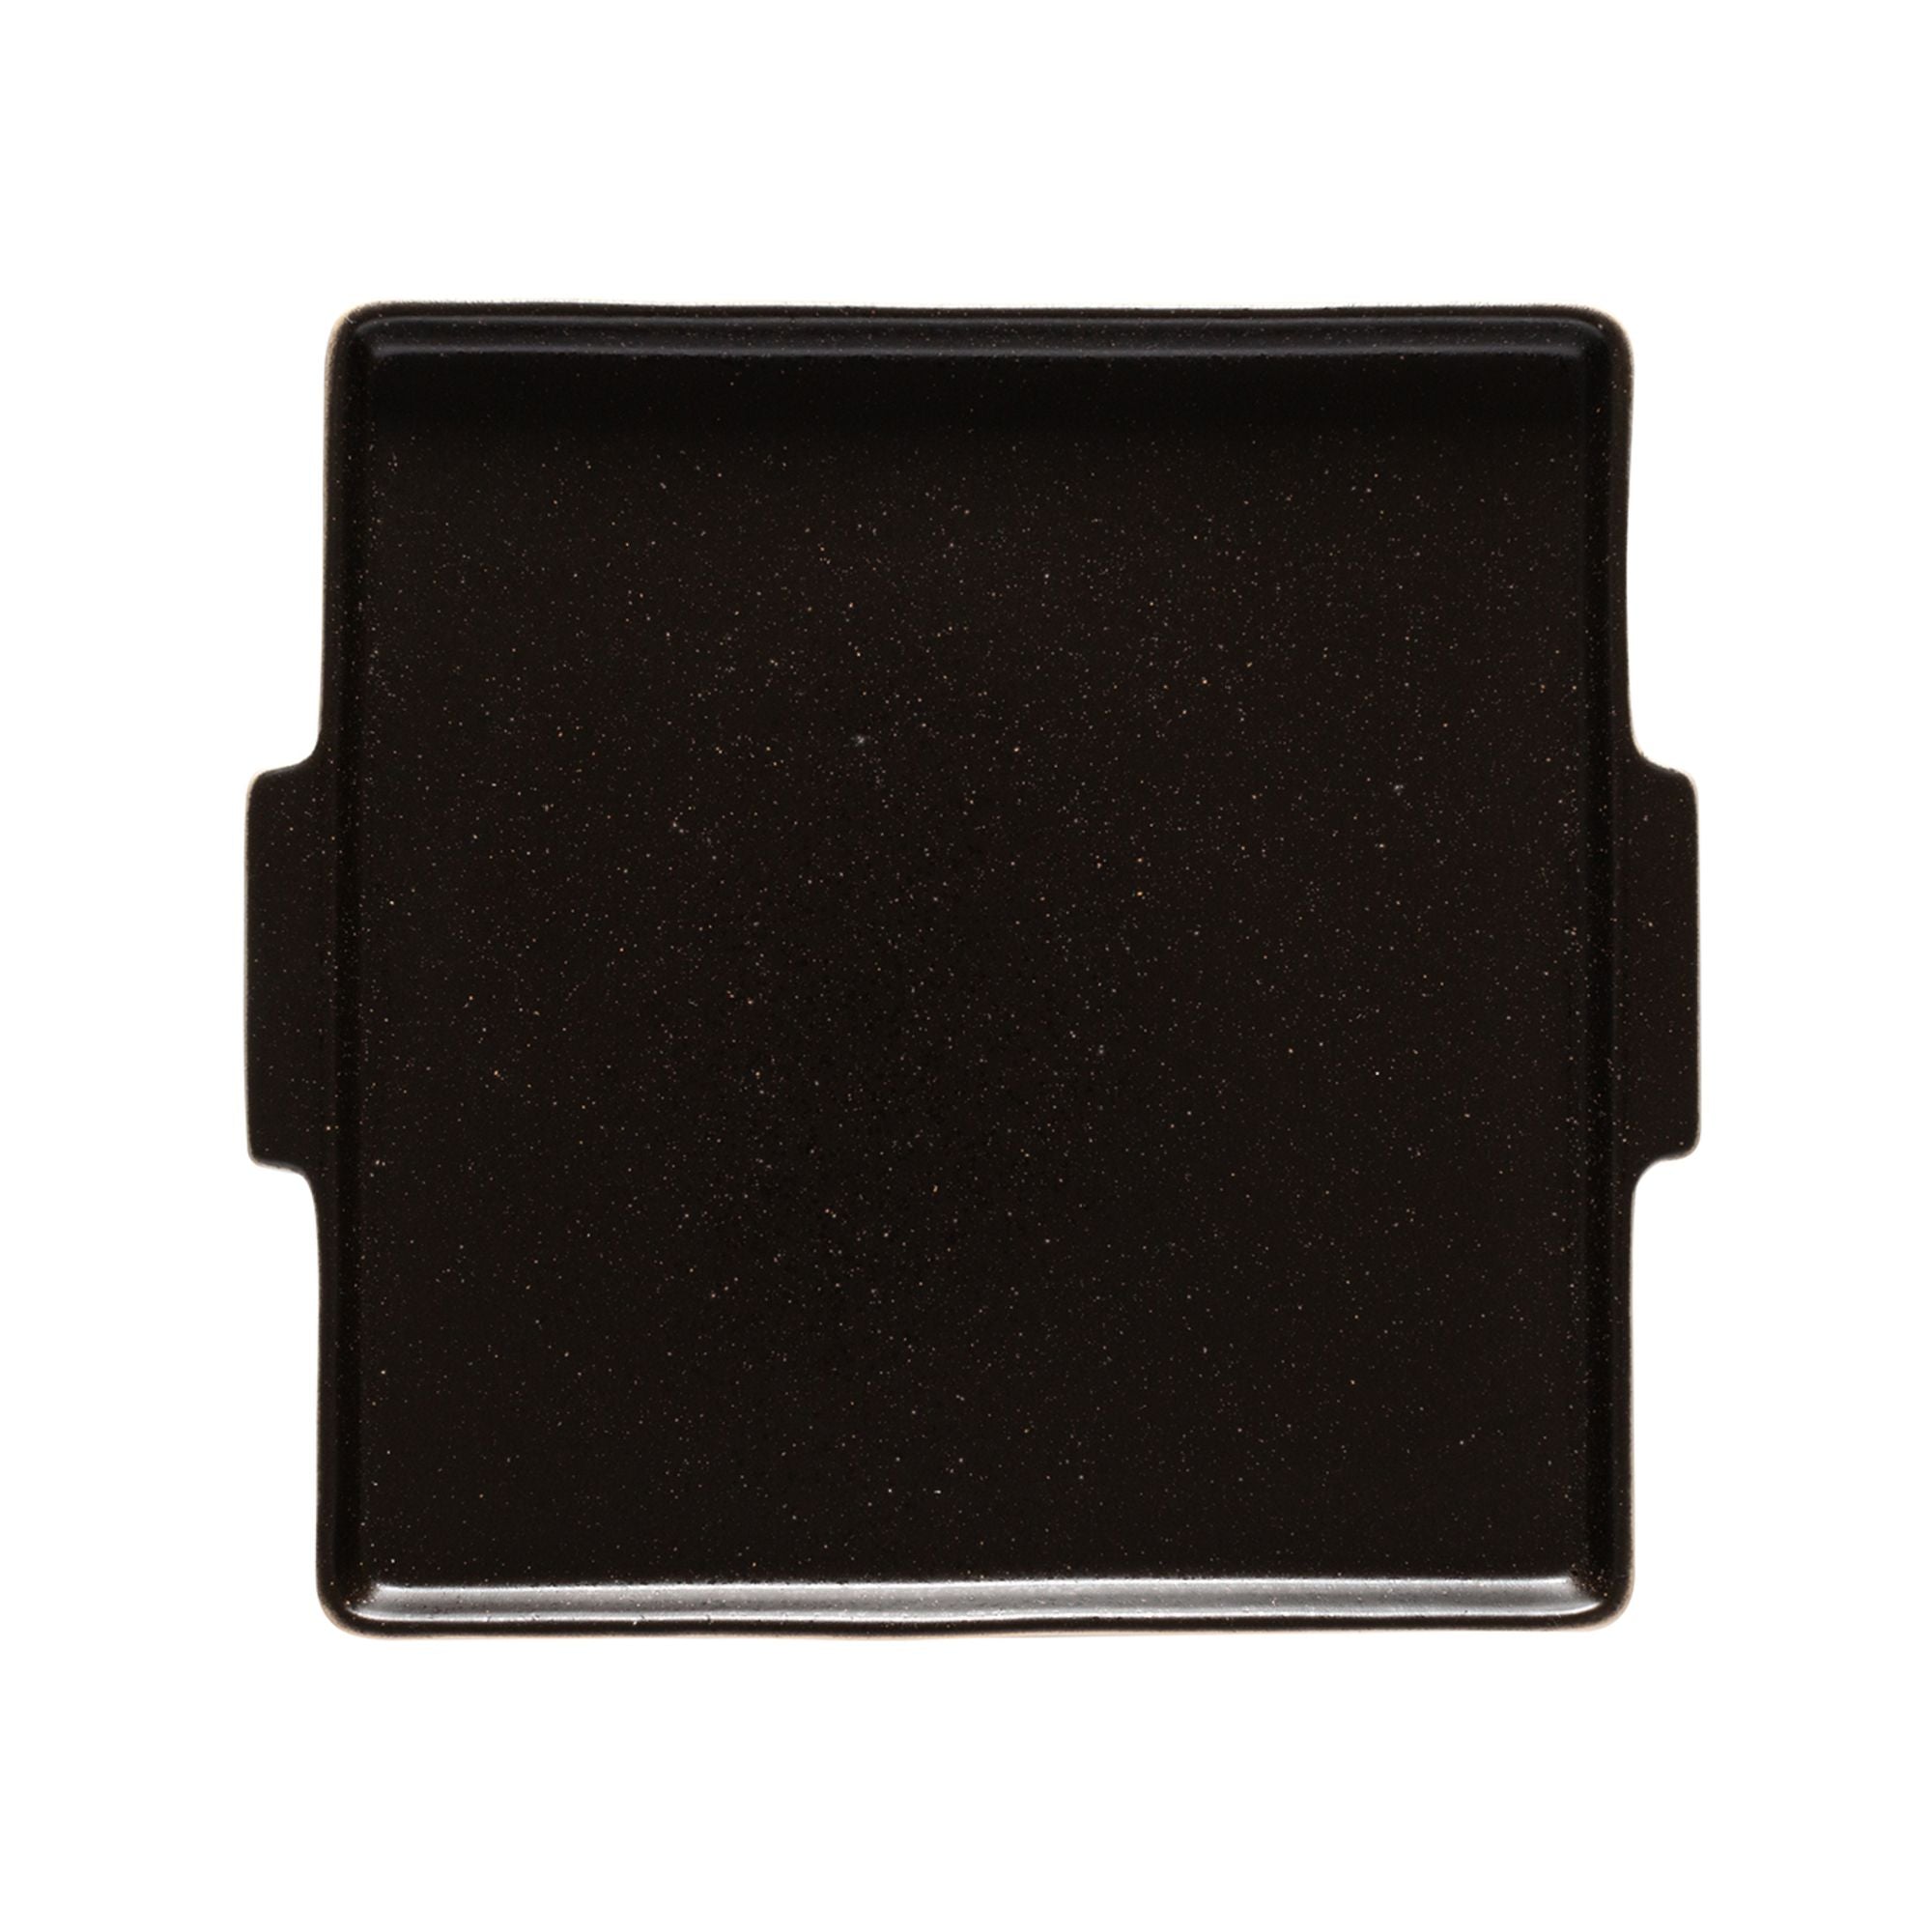 Nótos Square Plate/Tray 9" Latitude Black